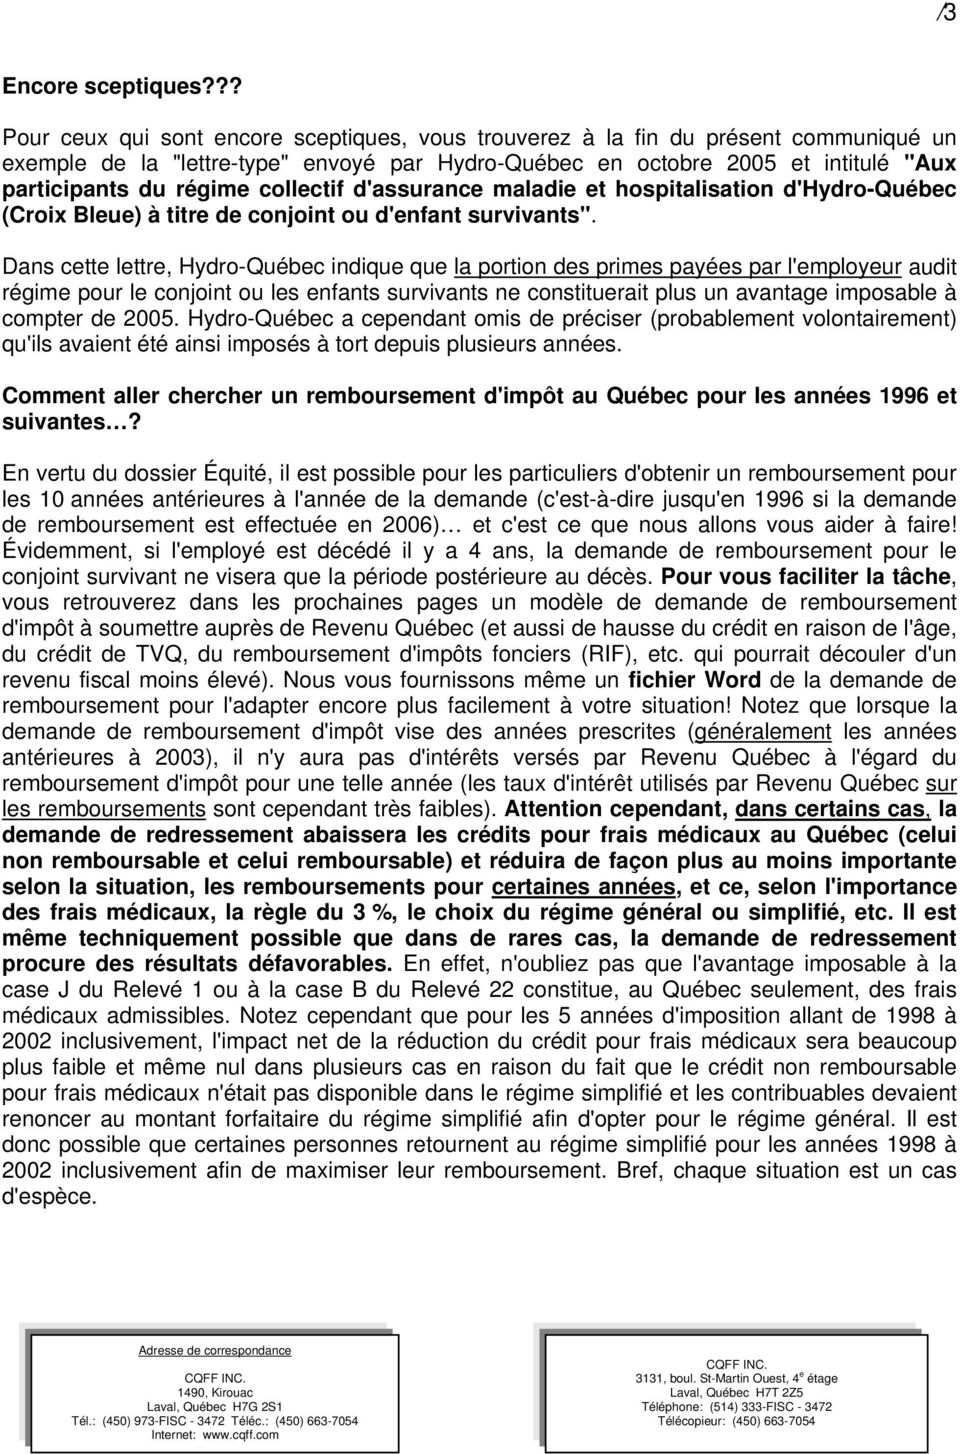 collectif d'assurance maladie et hospitalisation d'hydro-québec (Croix Bleue) à titre de conjoint ou d'enfant survivants".